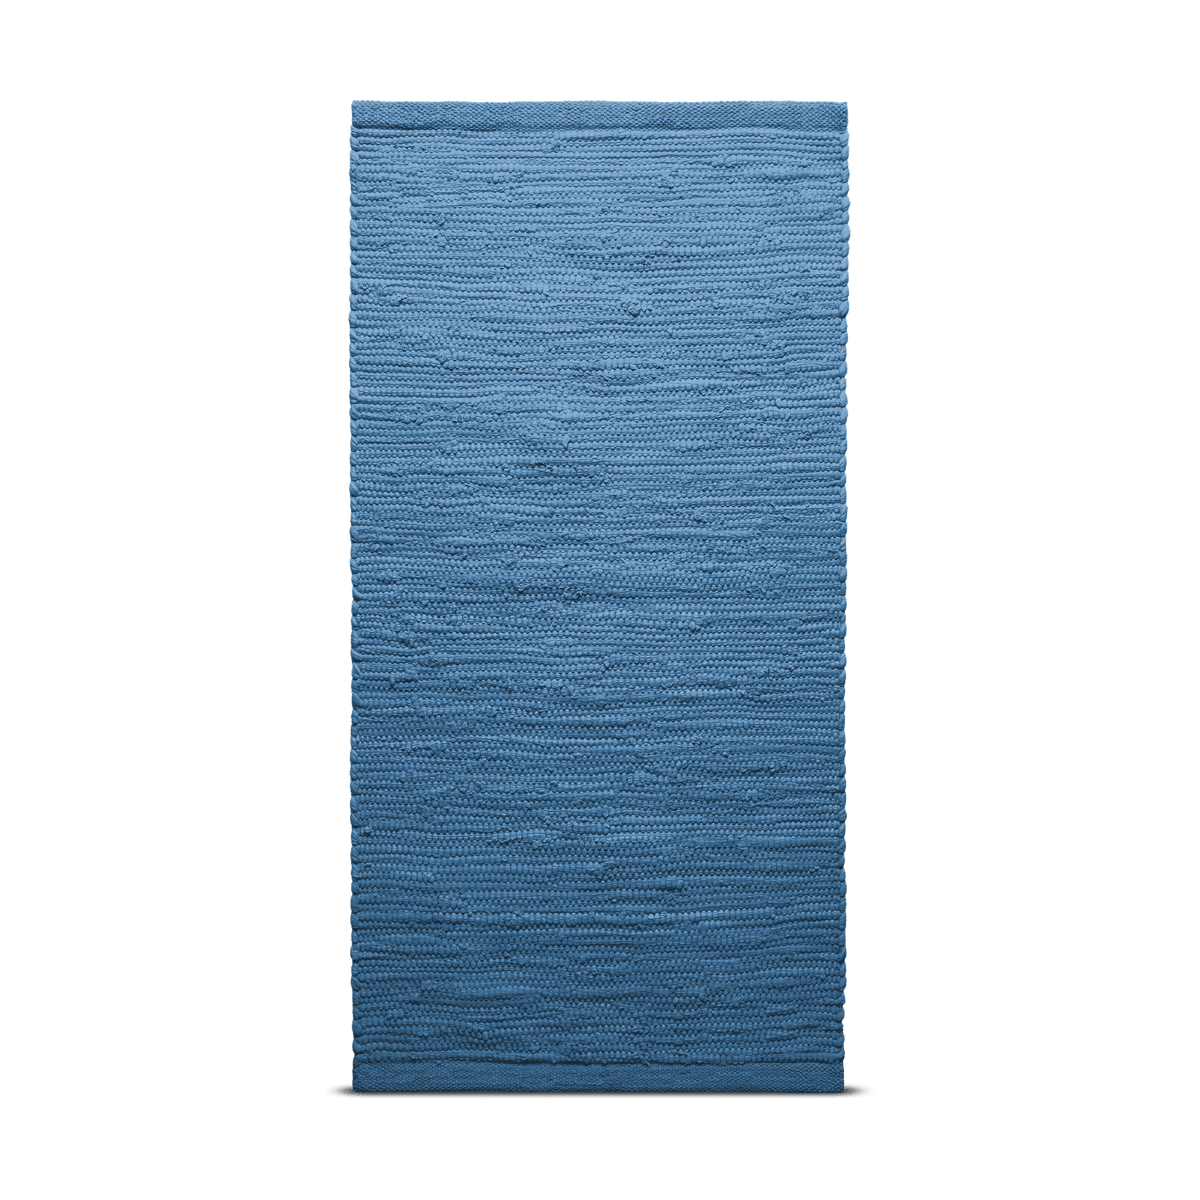 Rug Solid Cotton vloerkleed 140 x 200 cm. Stille Oceaan